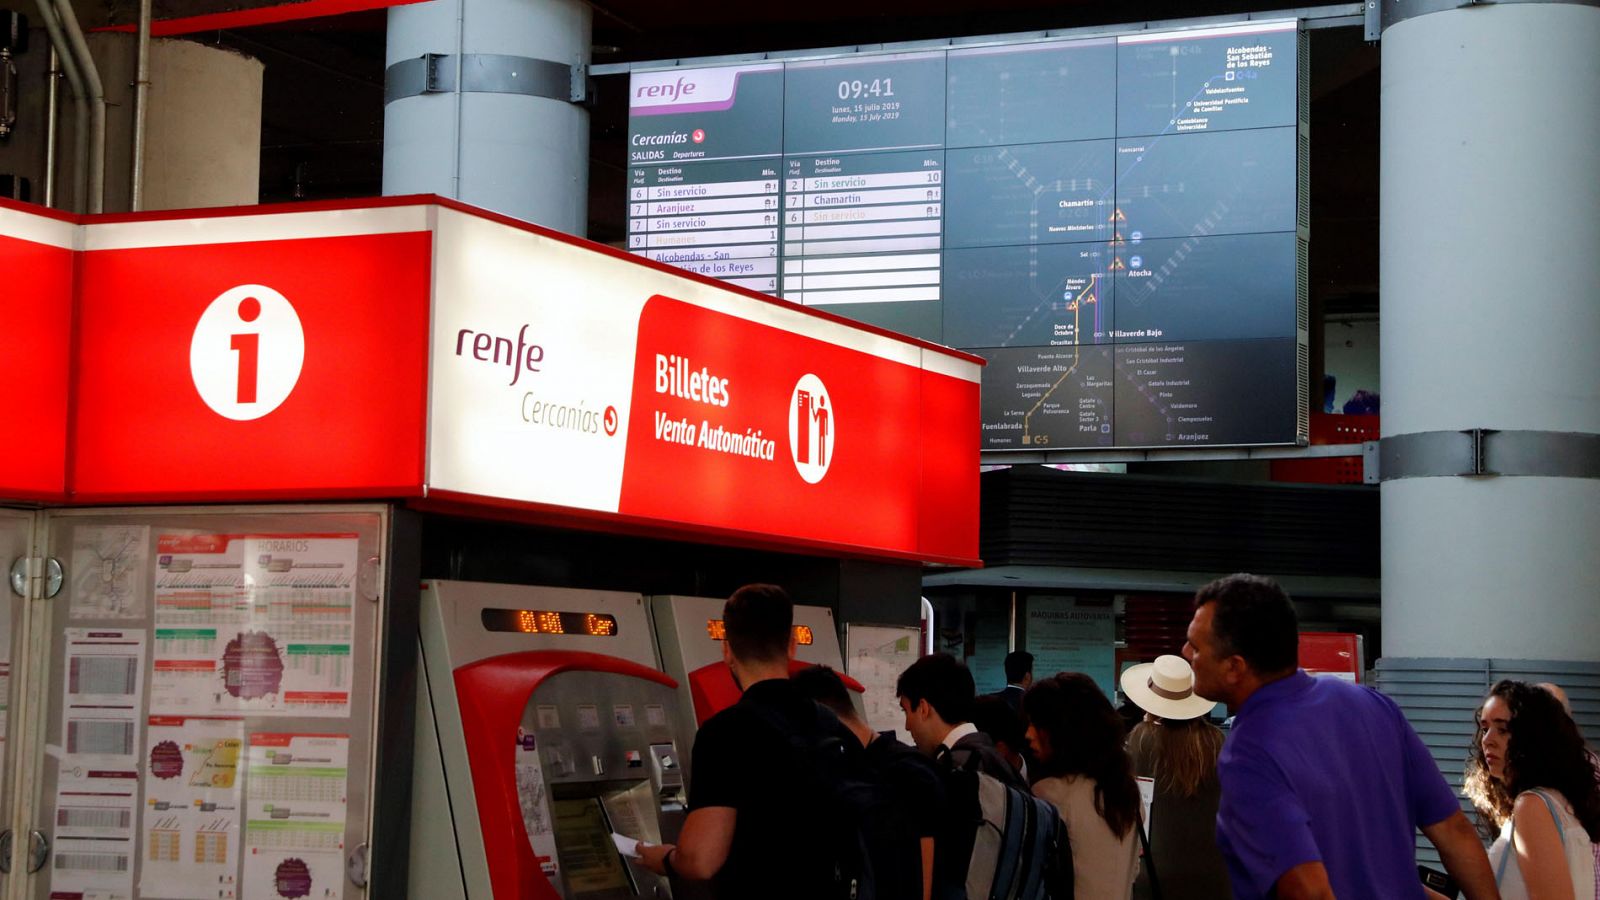 Huelga Renfe | Quejas de los pasajeros de Renfe en las primeras horas de huelga - RTVE.es